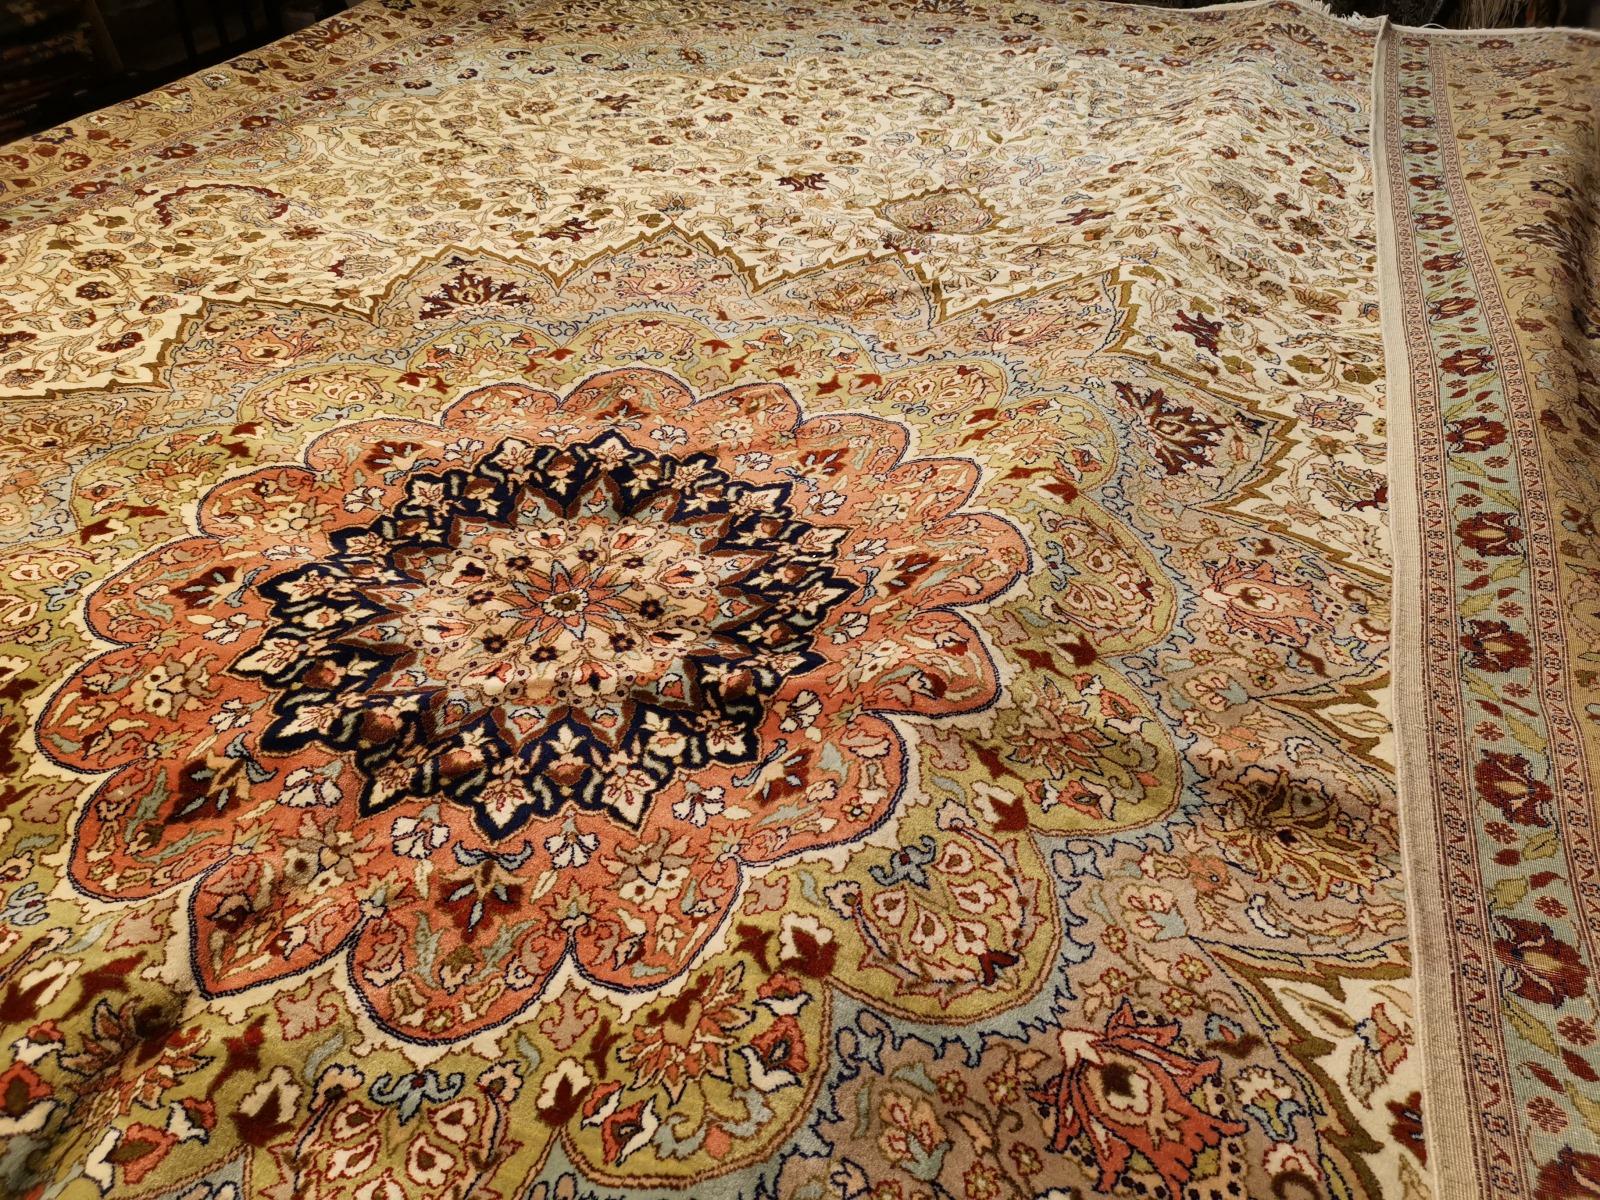 Fine Rug Vintage Turkish Hereke Carpet Oversize 17 x 11 ft hand knotted rug For Sale 1